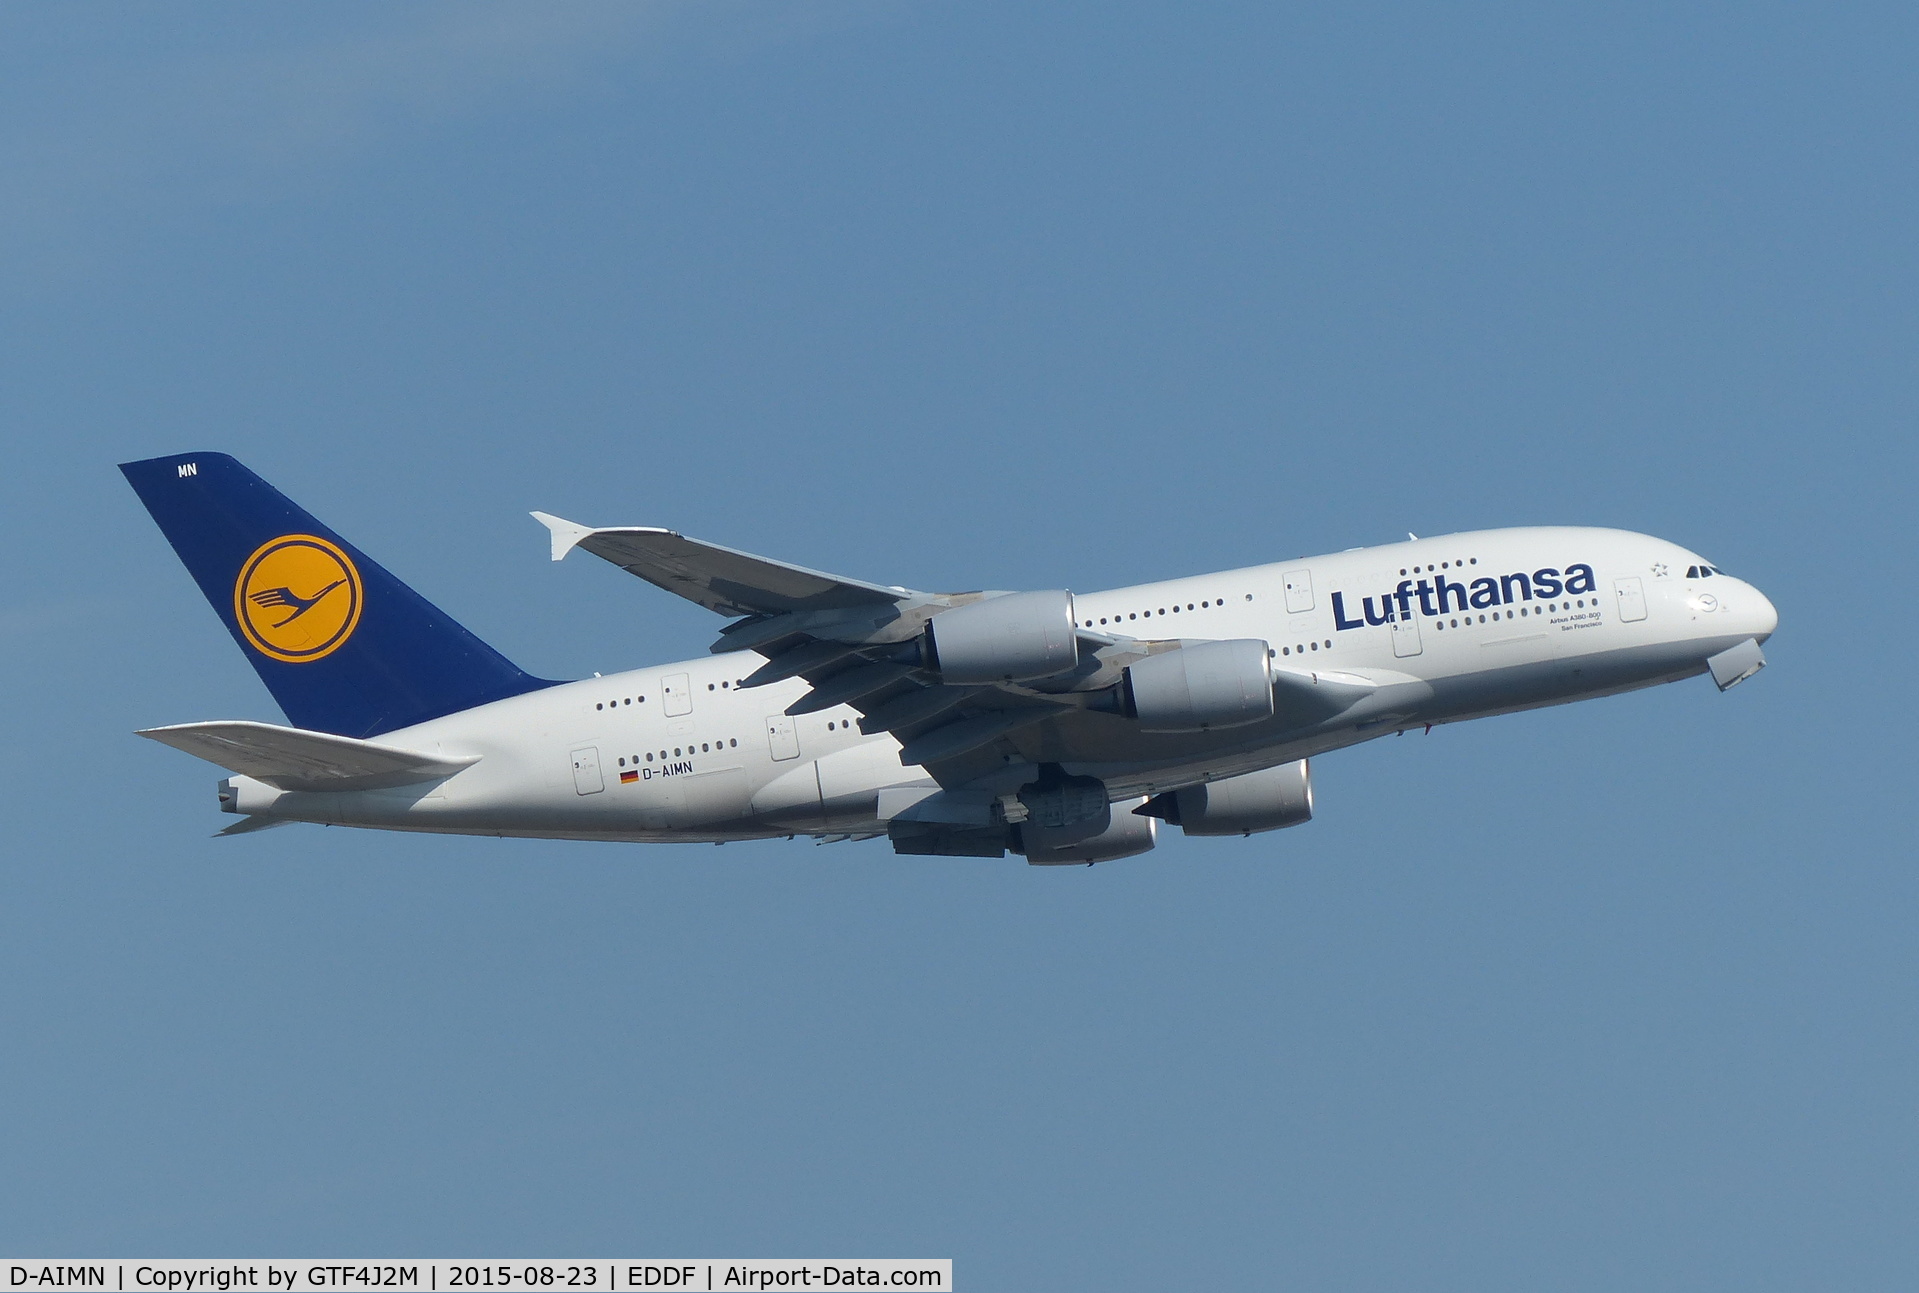 D-AIMN, 2014 Airbus A380-841 C/N 177, D-AIMN at Frankfurt 23.8.15